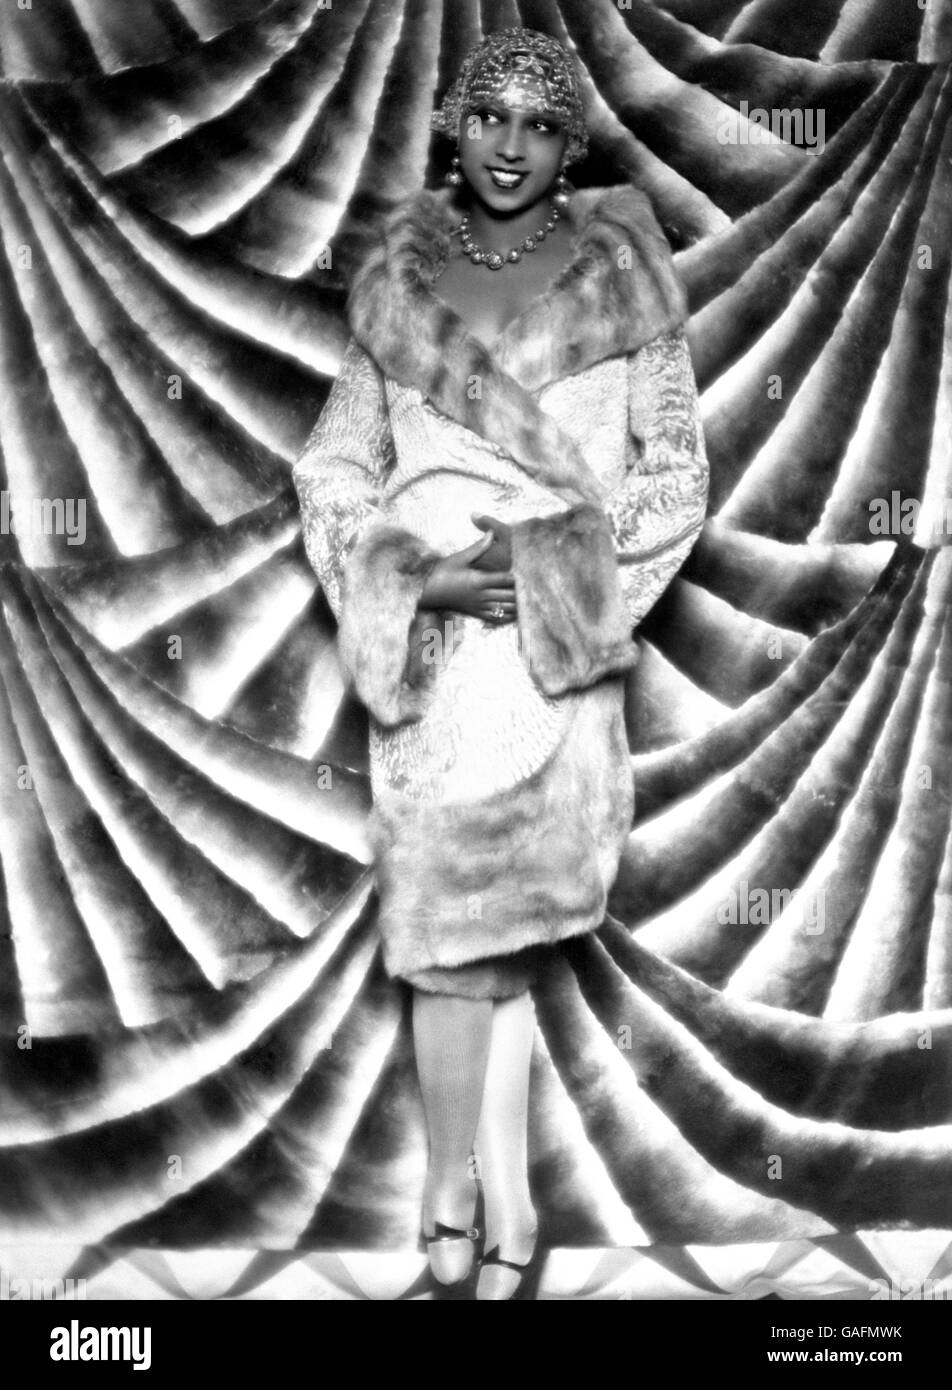 Entretenimiento francés - Josephine Baker - París - 1928 Foto de stock